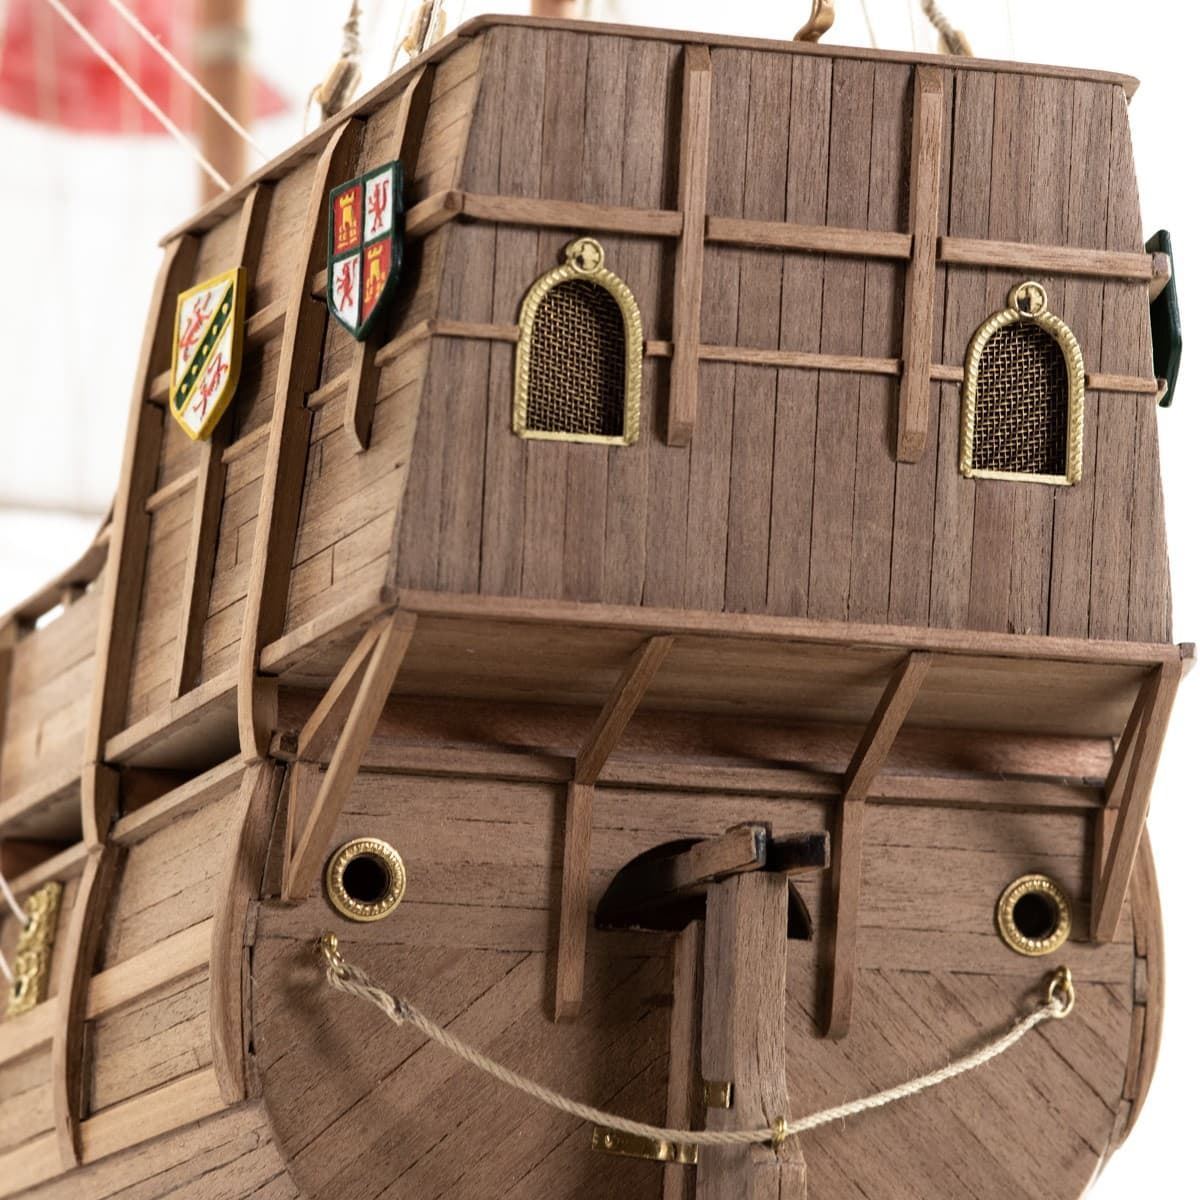 Maqueta barco madera: Carabela Santa María - Imagen 10